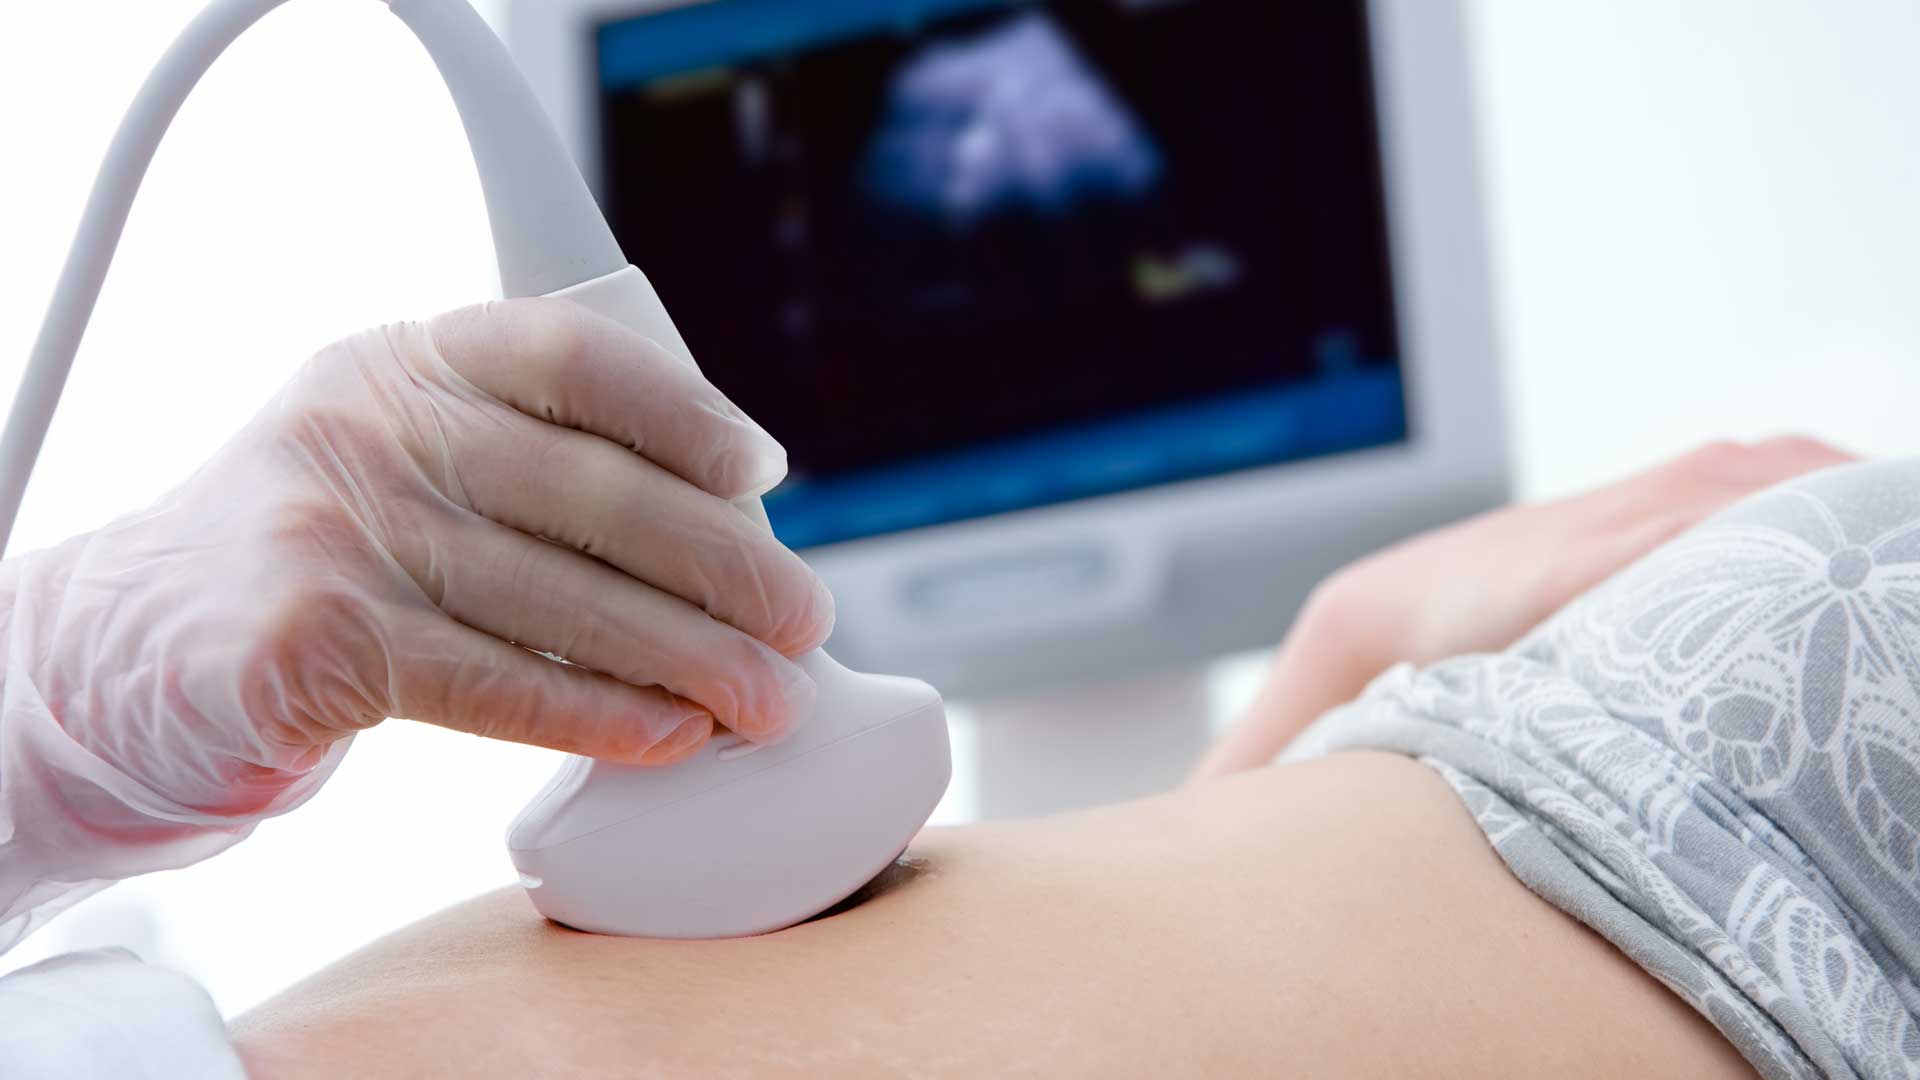 Fertility Treatment Abroad